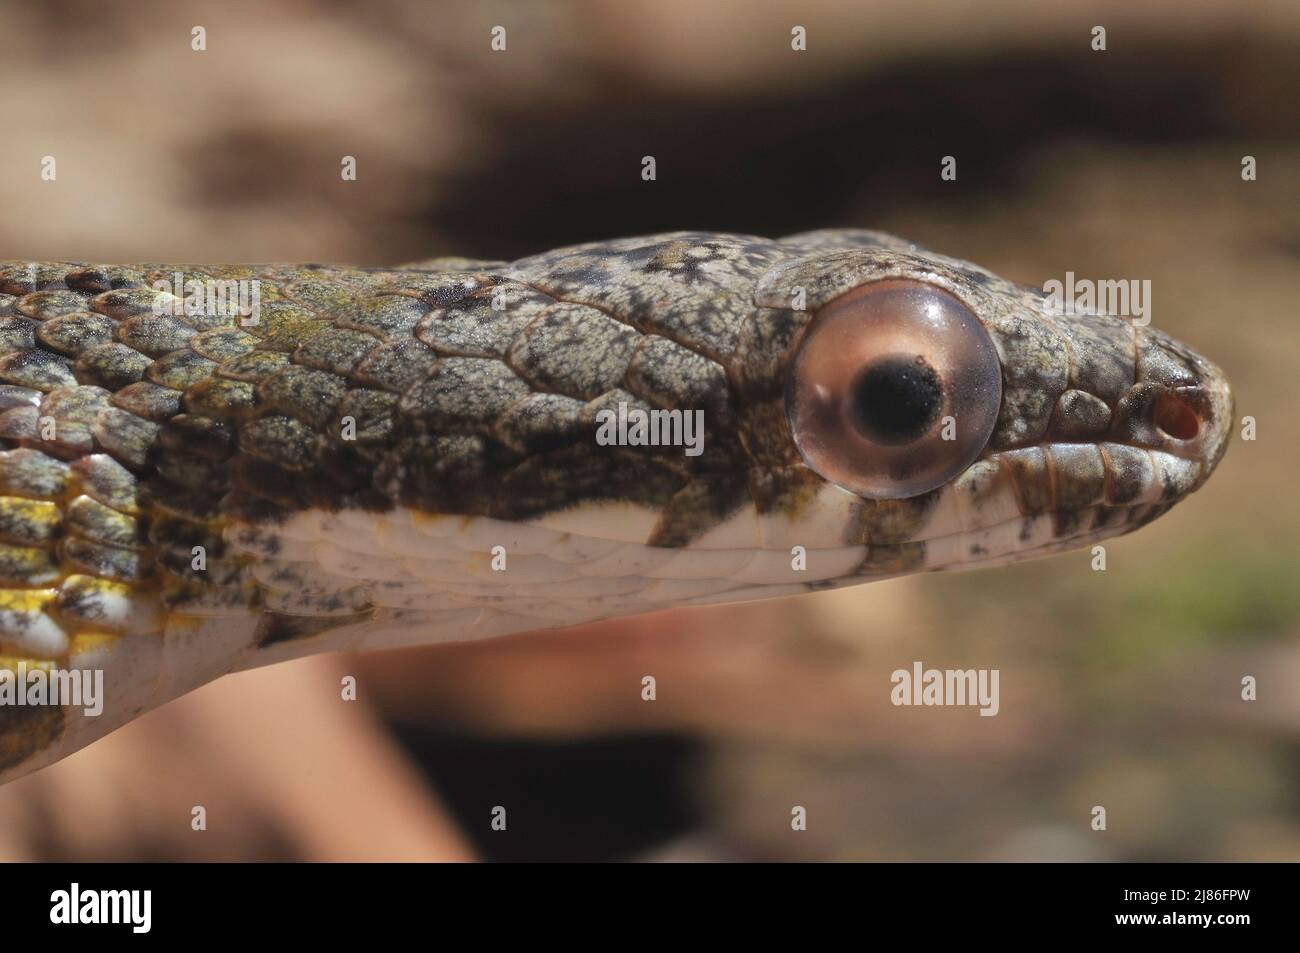 Retrato de la serpiente de Puffin Guayana Francesa Foto de stock